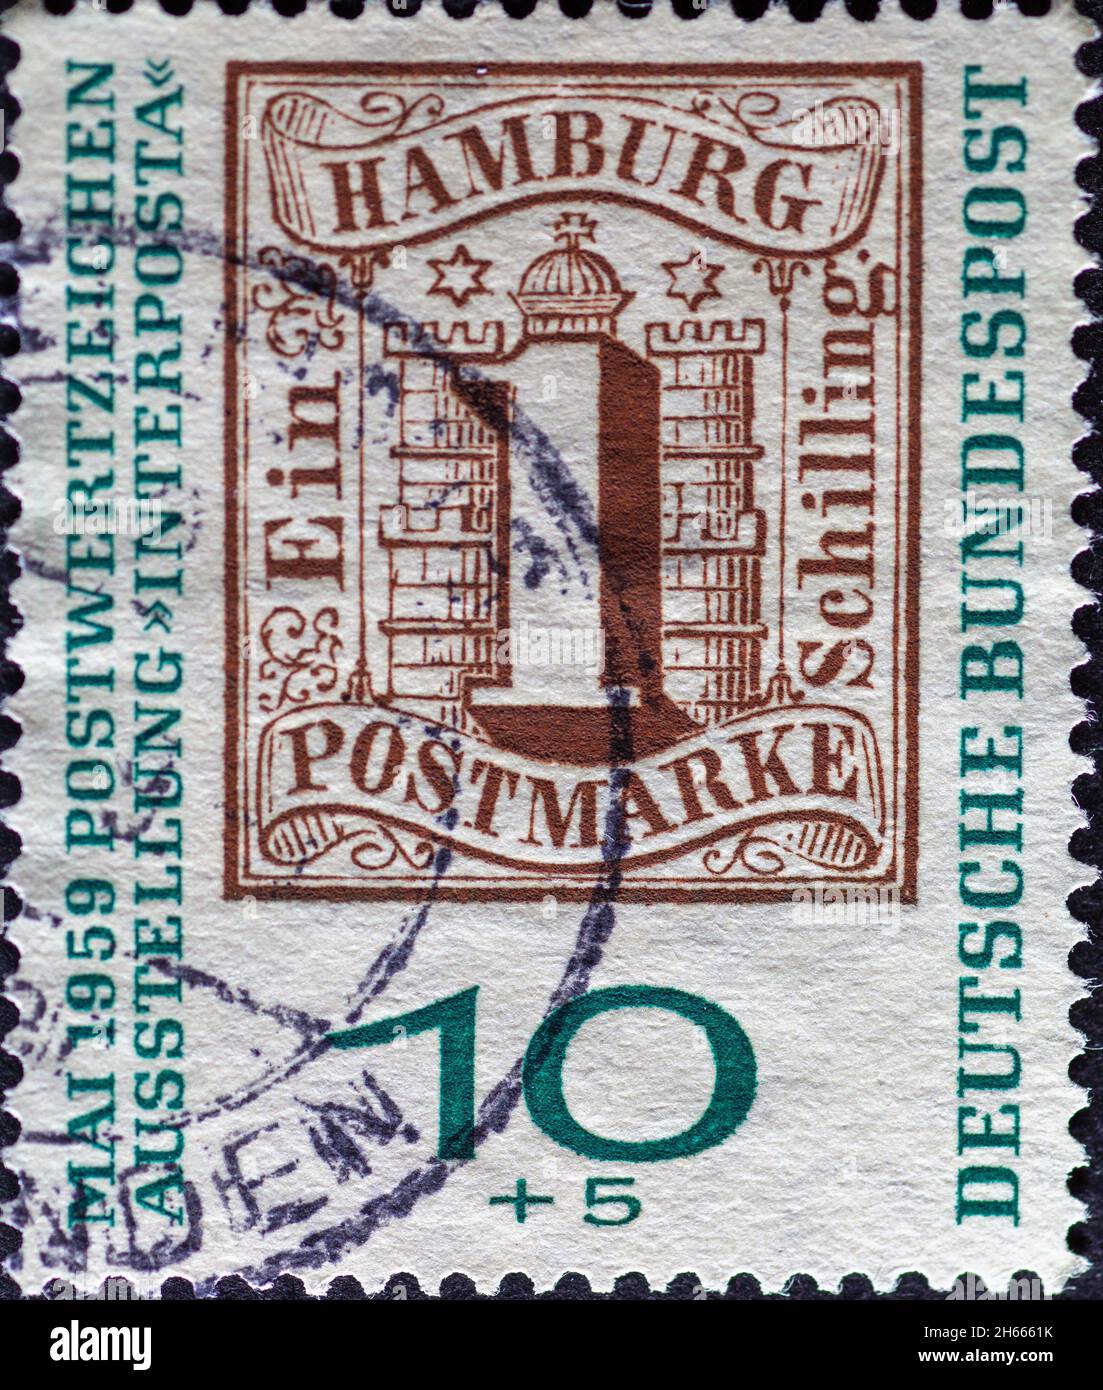 ALLEMAGNE - VERS 1959: Un timbre-poste montrant une illustration de l'historique timbre-poste Hambourg un shilling.Exposition internationale de timbres INTE Banque D'Images